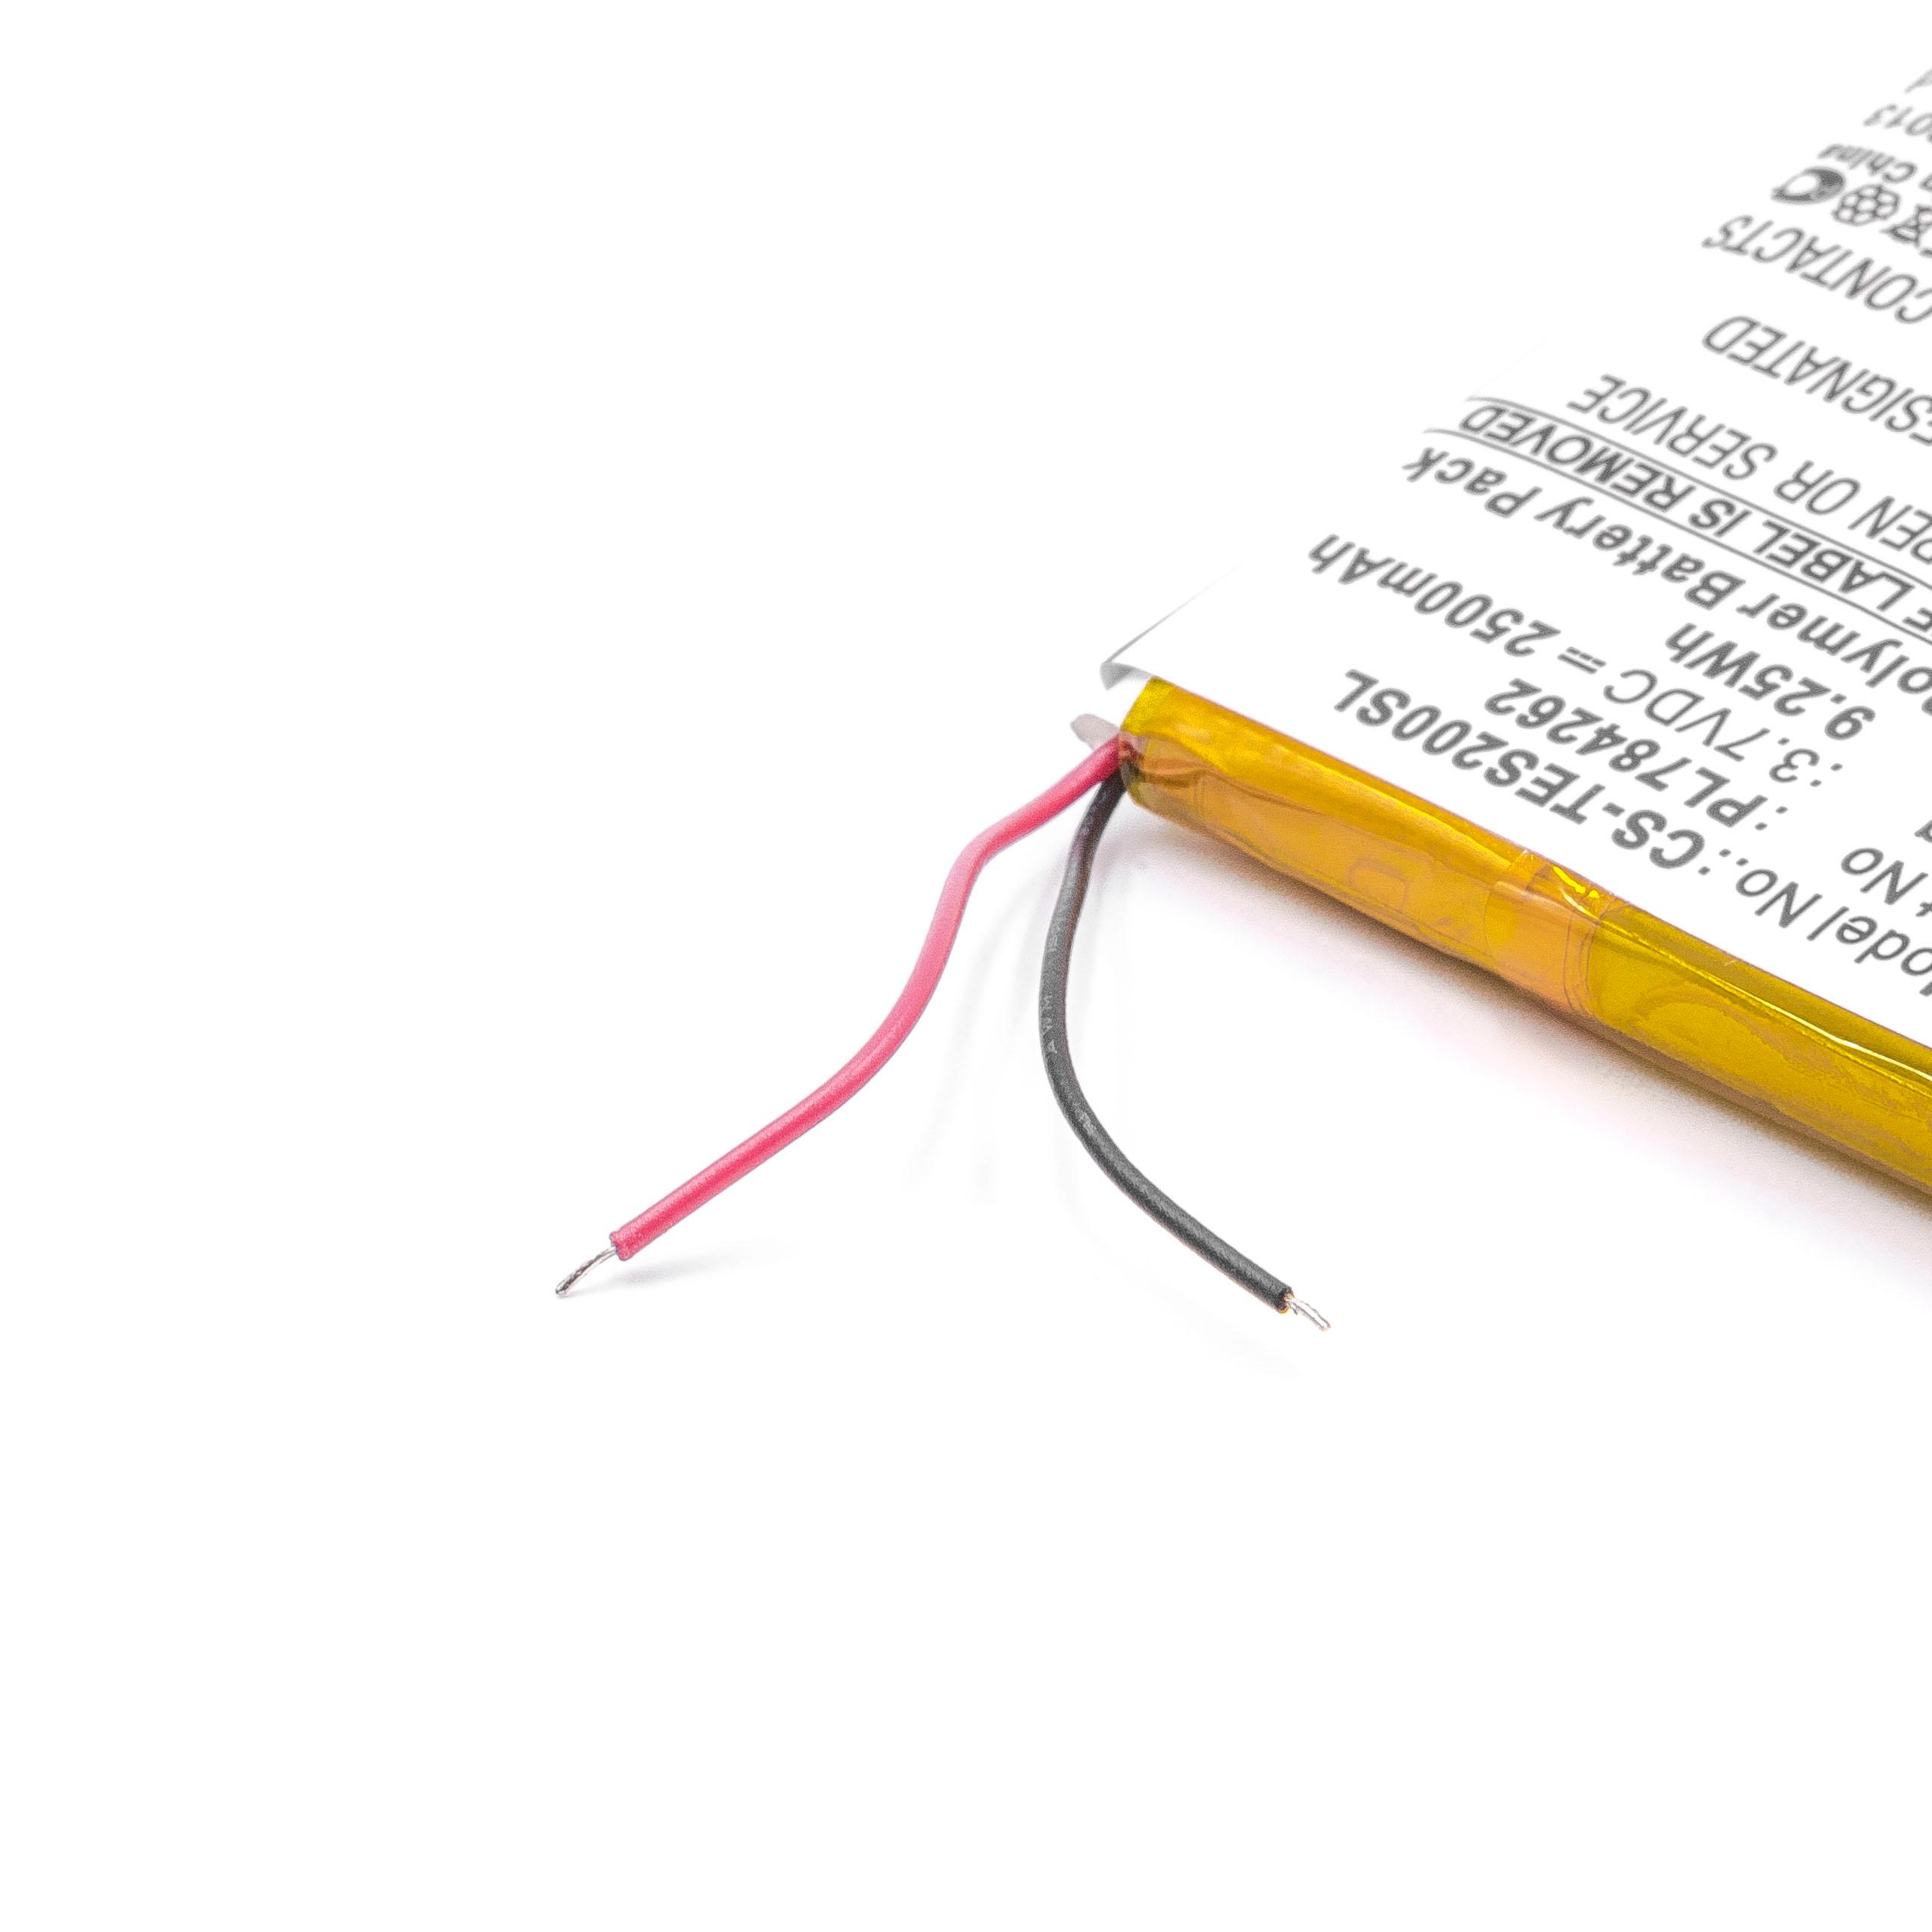 Batterie remplace Teasi PL784262 pour navigation GPS - 2500mAh 3,7V Li-polymère